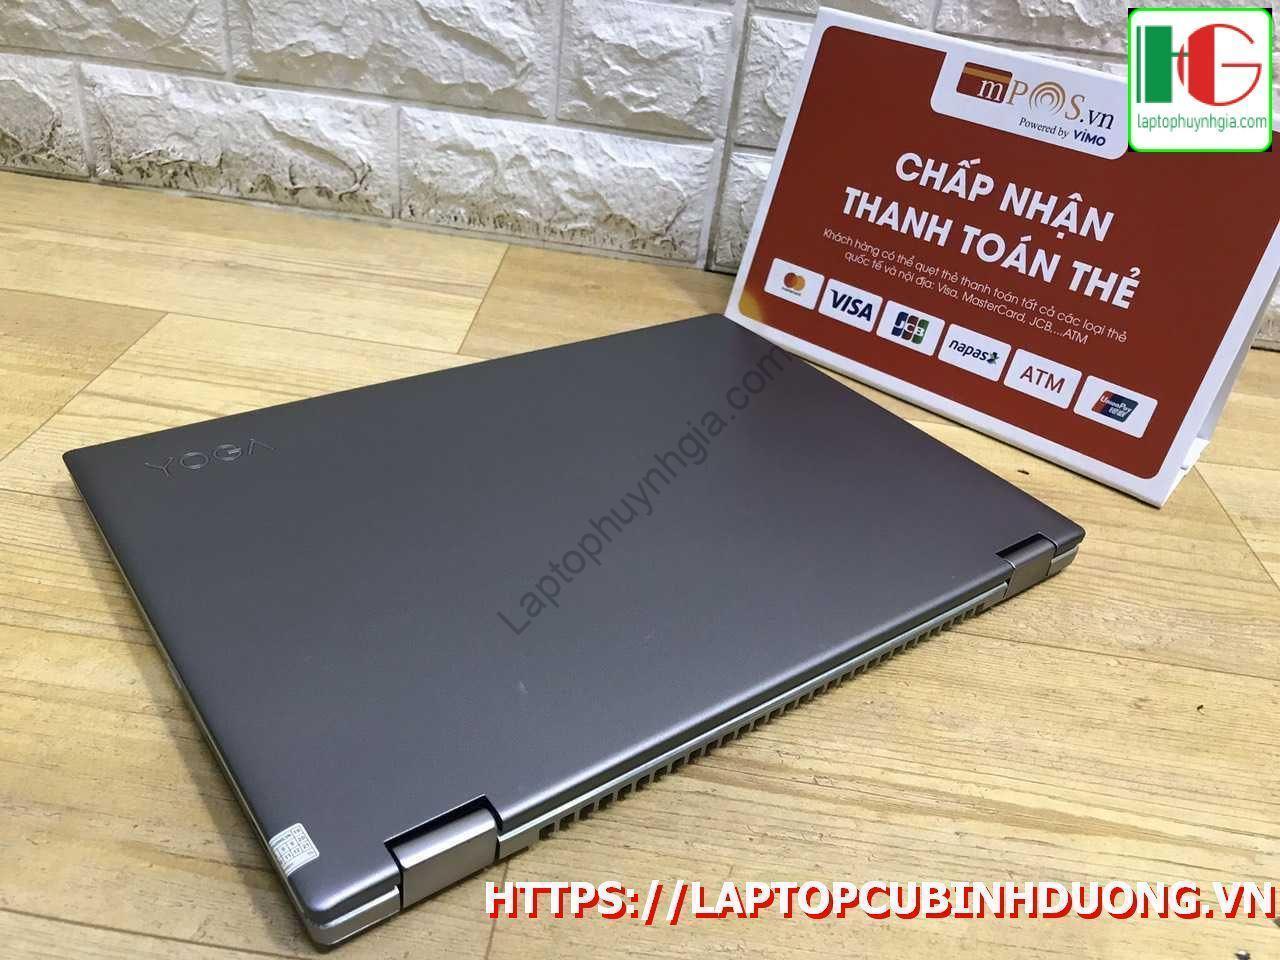 Lenovo Yoga 520 I3 7130u 4g Ssd 128g Lcd 14 Laptopcubinhduong.vn [kích Thước Gốc] Result